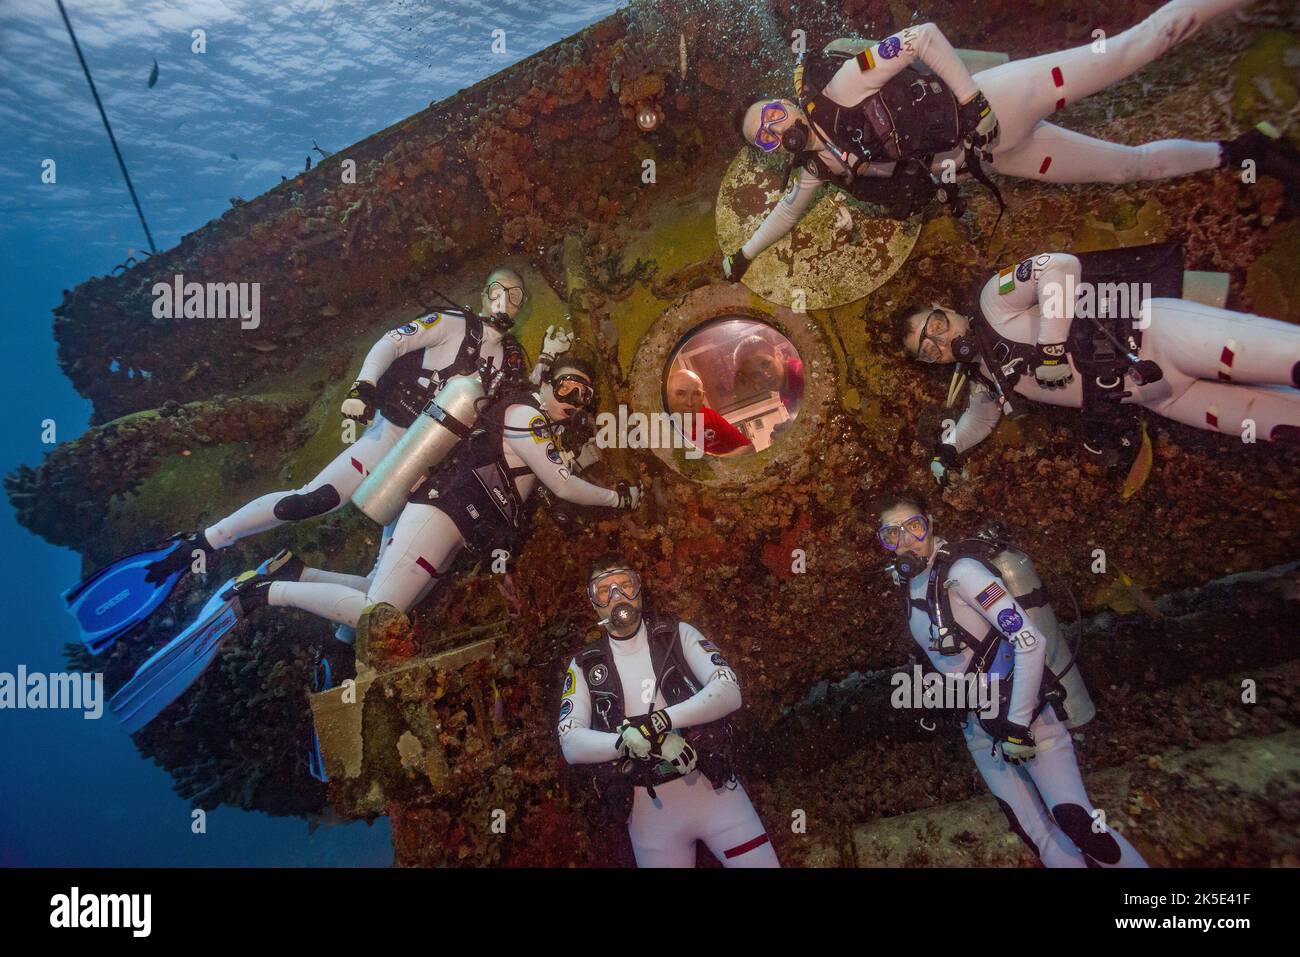 Die NASA Extreme Environment Mission Operations (NEEMO) 21 Mission begann am 21. Juli 2016, als eine internationale Besatzung von Aquanauts die Wassermann Reef Base erreichte, 62ft unter der Oberfläche des Atlantischen Ozeans im Florida Keys National Marine Sanctuary. Die NEEMO 21 Crew forschte innerhalb und außerhalb des Lebensraums während einer 16-tägigen simulierten Weltraummission. Während simulierter Raumwälle unter Wasser evaluierten sie Werkzeuge und Einsatztechniken, die in zukünftigen Weltraummissionen eingesetzt werden könnten – eine optimierte Version eines Originalbildes der NASA. Quelle: NASA/KShreeves. Nur für redaktionelle Zwecke Stockfoto